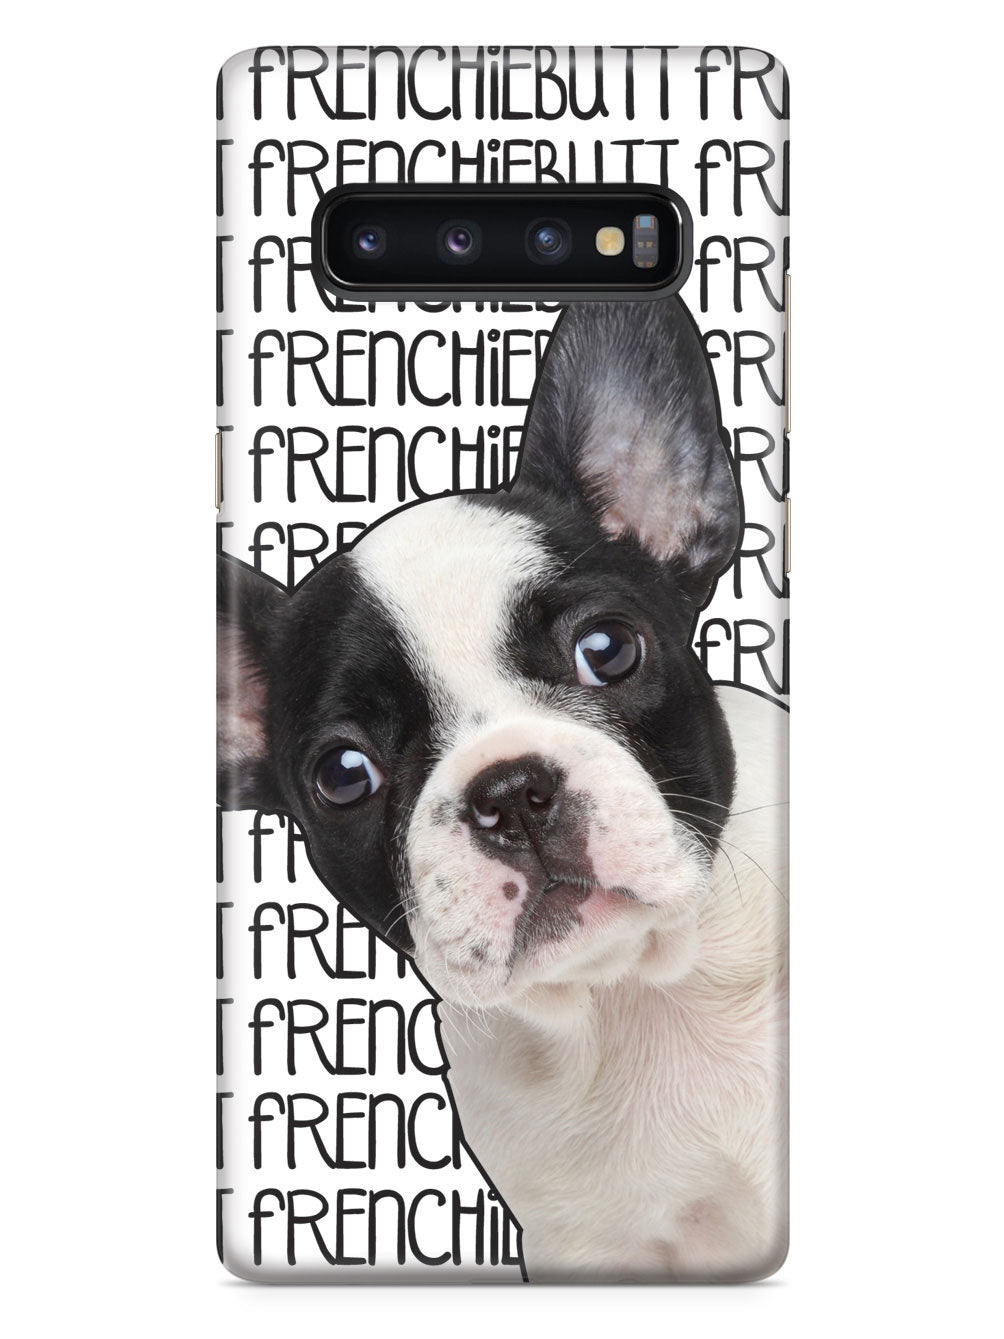 Frenchiebutt - French Bulldog Case